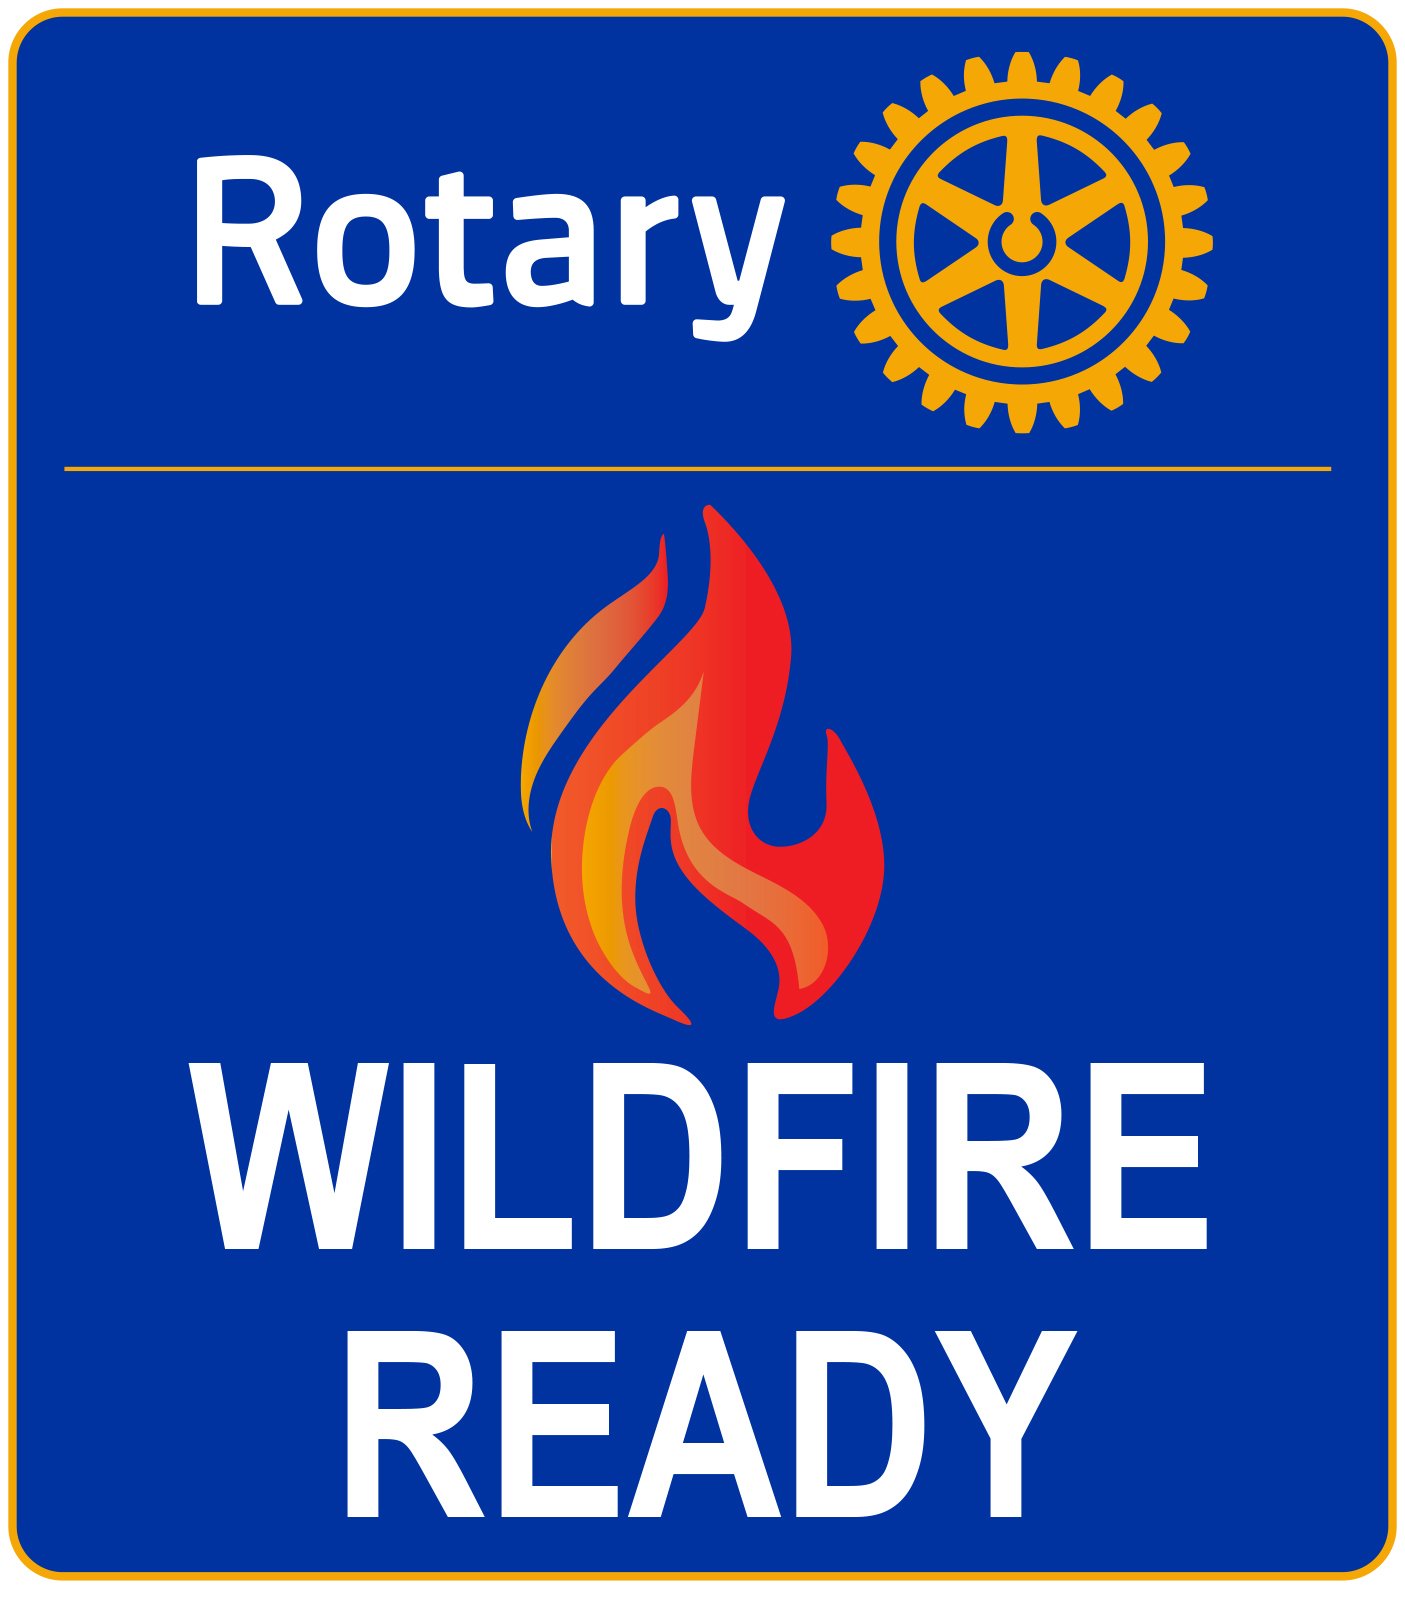 Rotary Wildfire Ready LOGO 2021.jpg